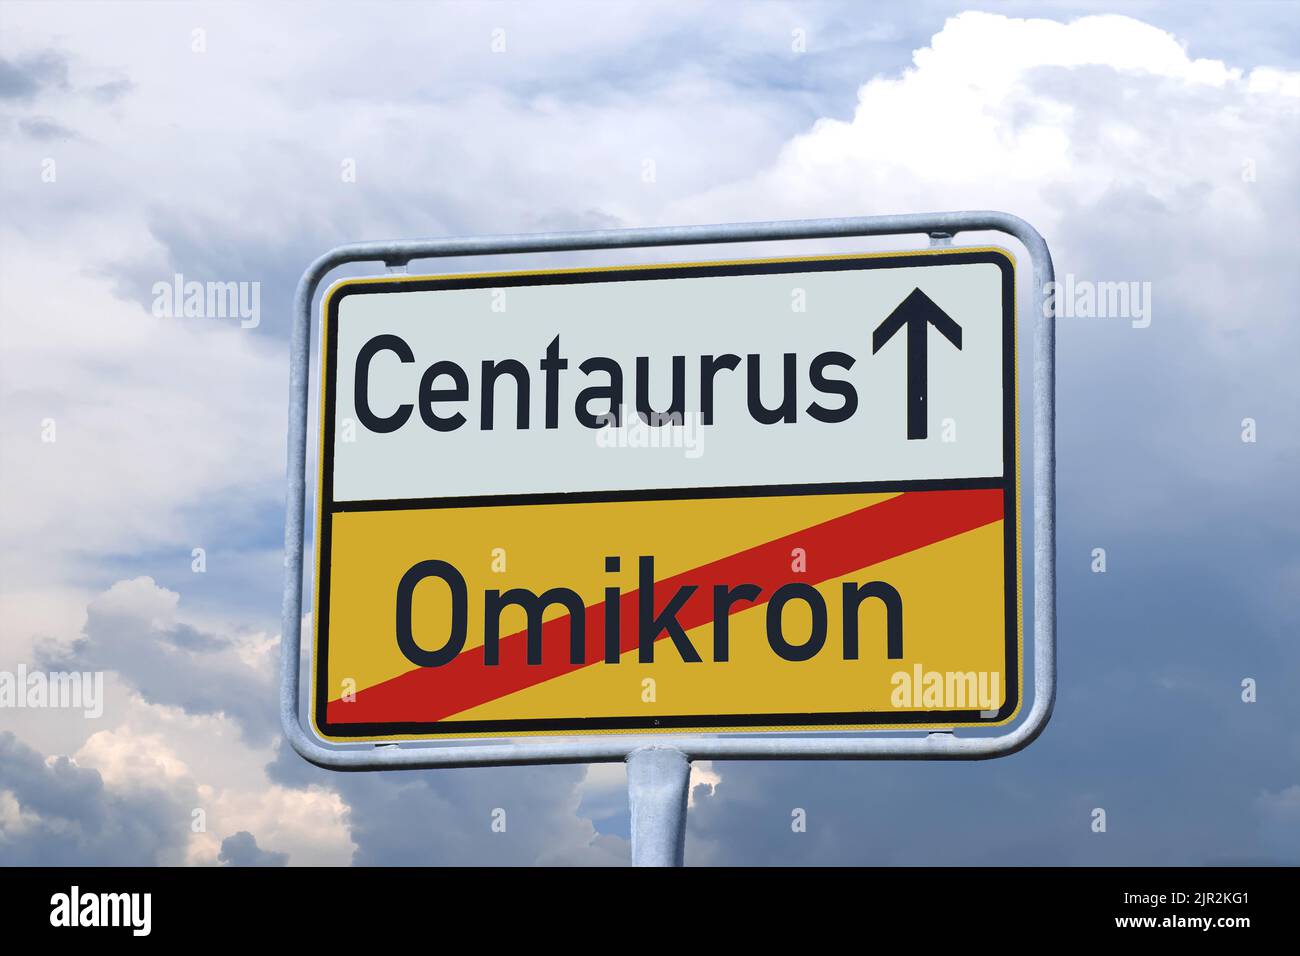 Symbolbild Centaurus: Zuelen von Omikron zu Centraurus Foto Stock